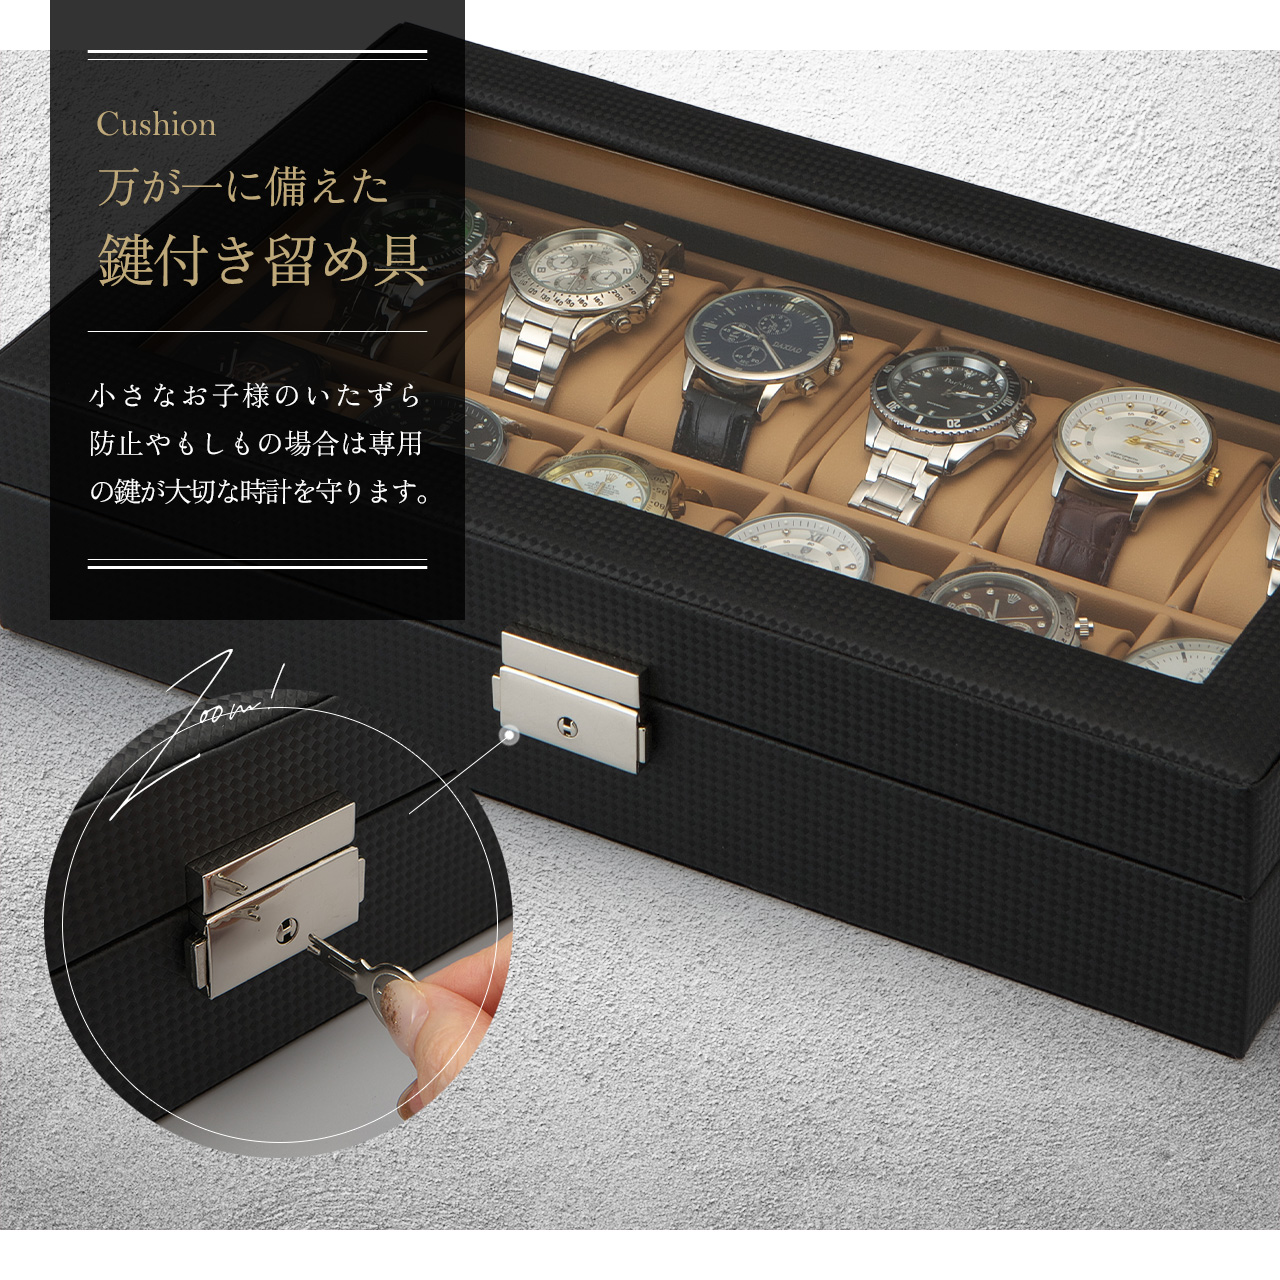 腕時計ケース 12本用 眼鏡 サングラス 腕時計6本 サングラス3本 時計ケース 時計 腕時計 収納 保管 カーボンファイバー 90日保証 GEUM